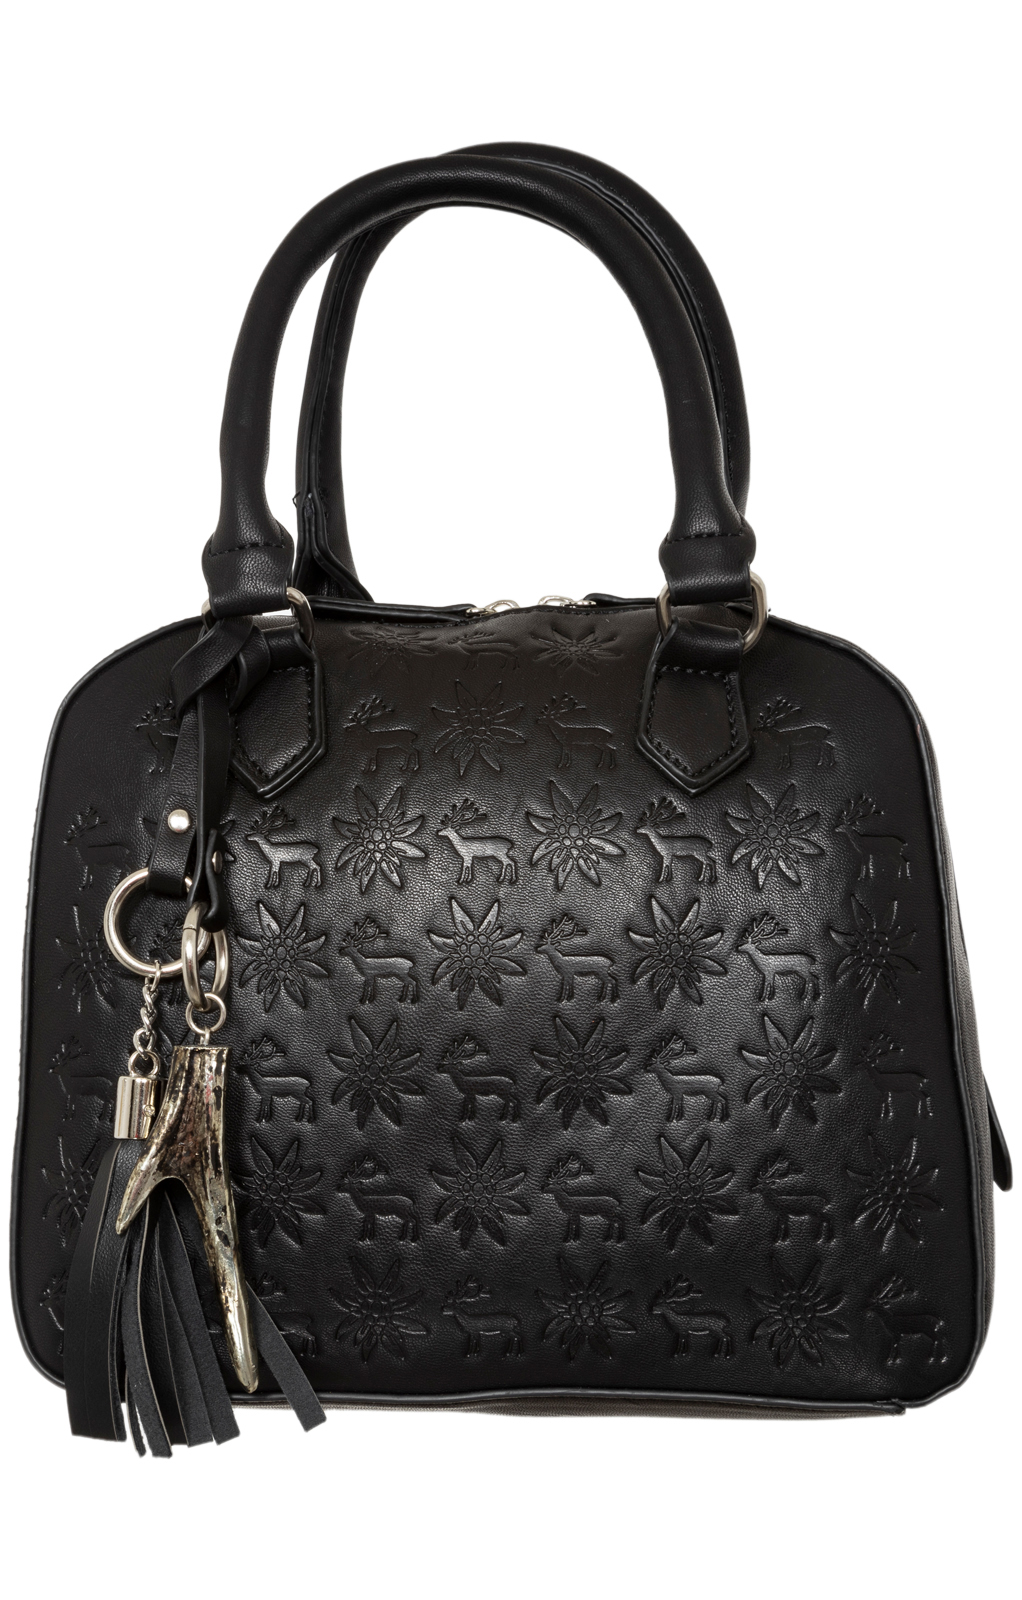 Trachtentasche 13202 schwarz von Lady Edelweiss